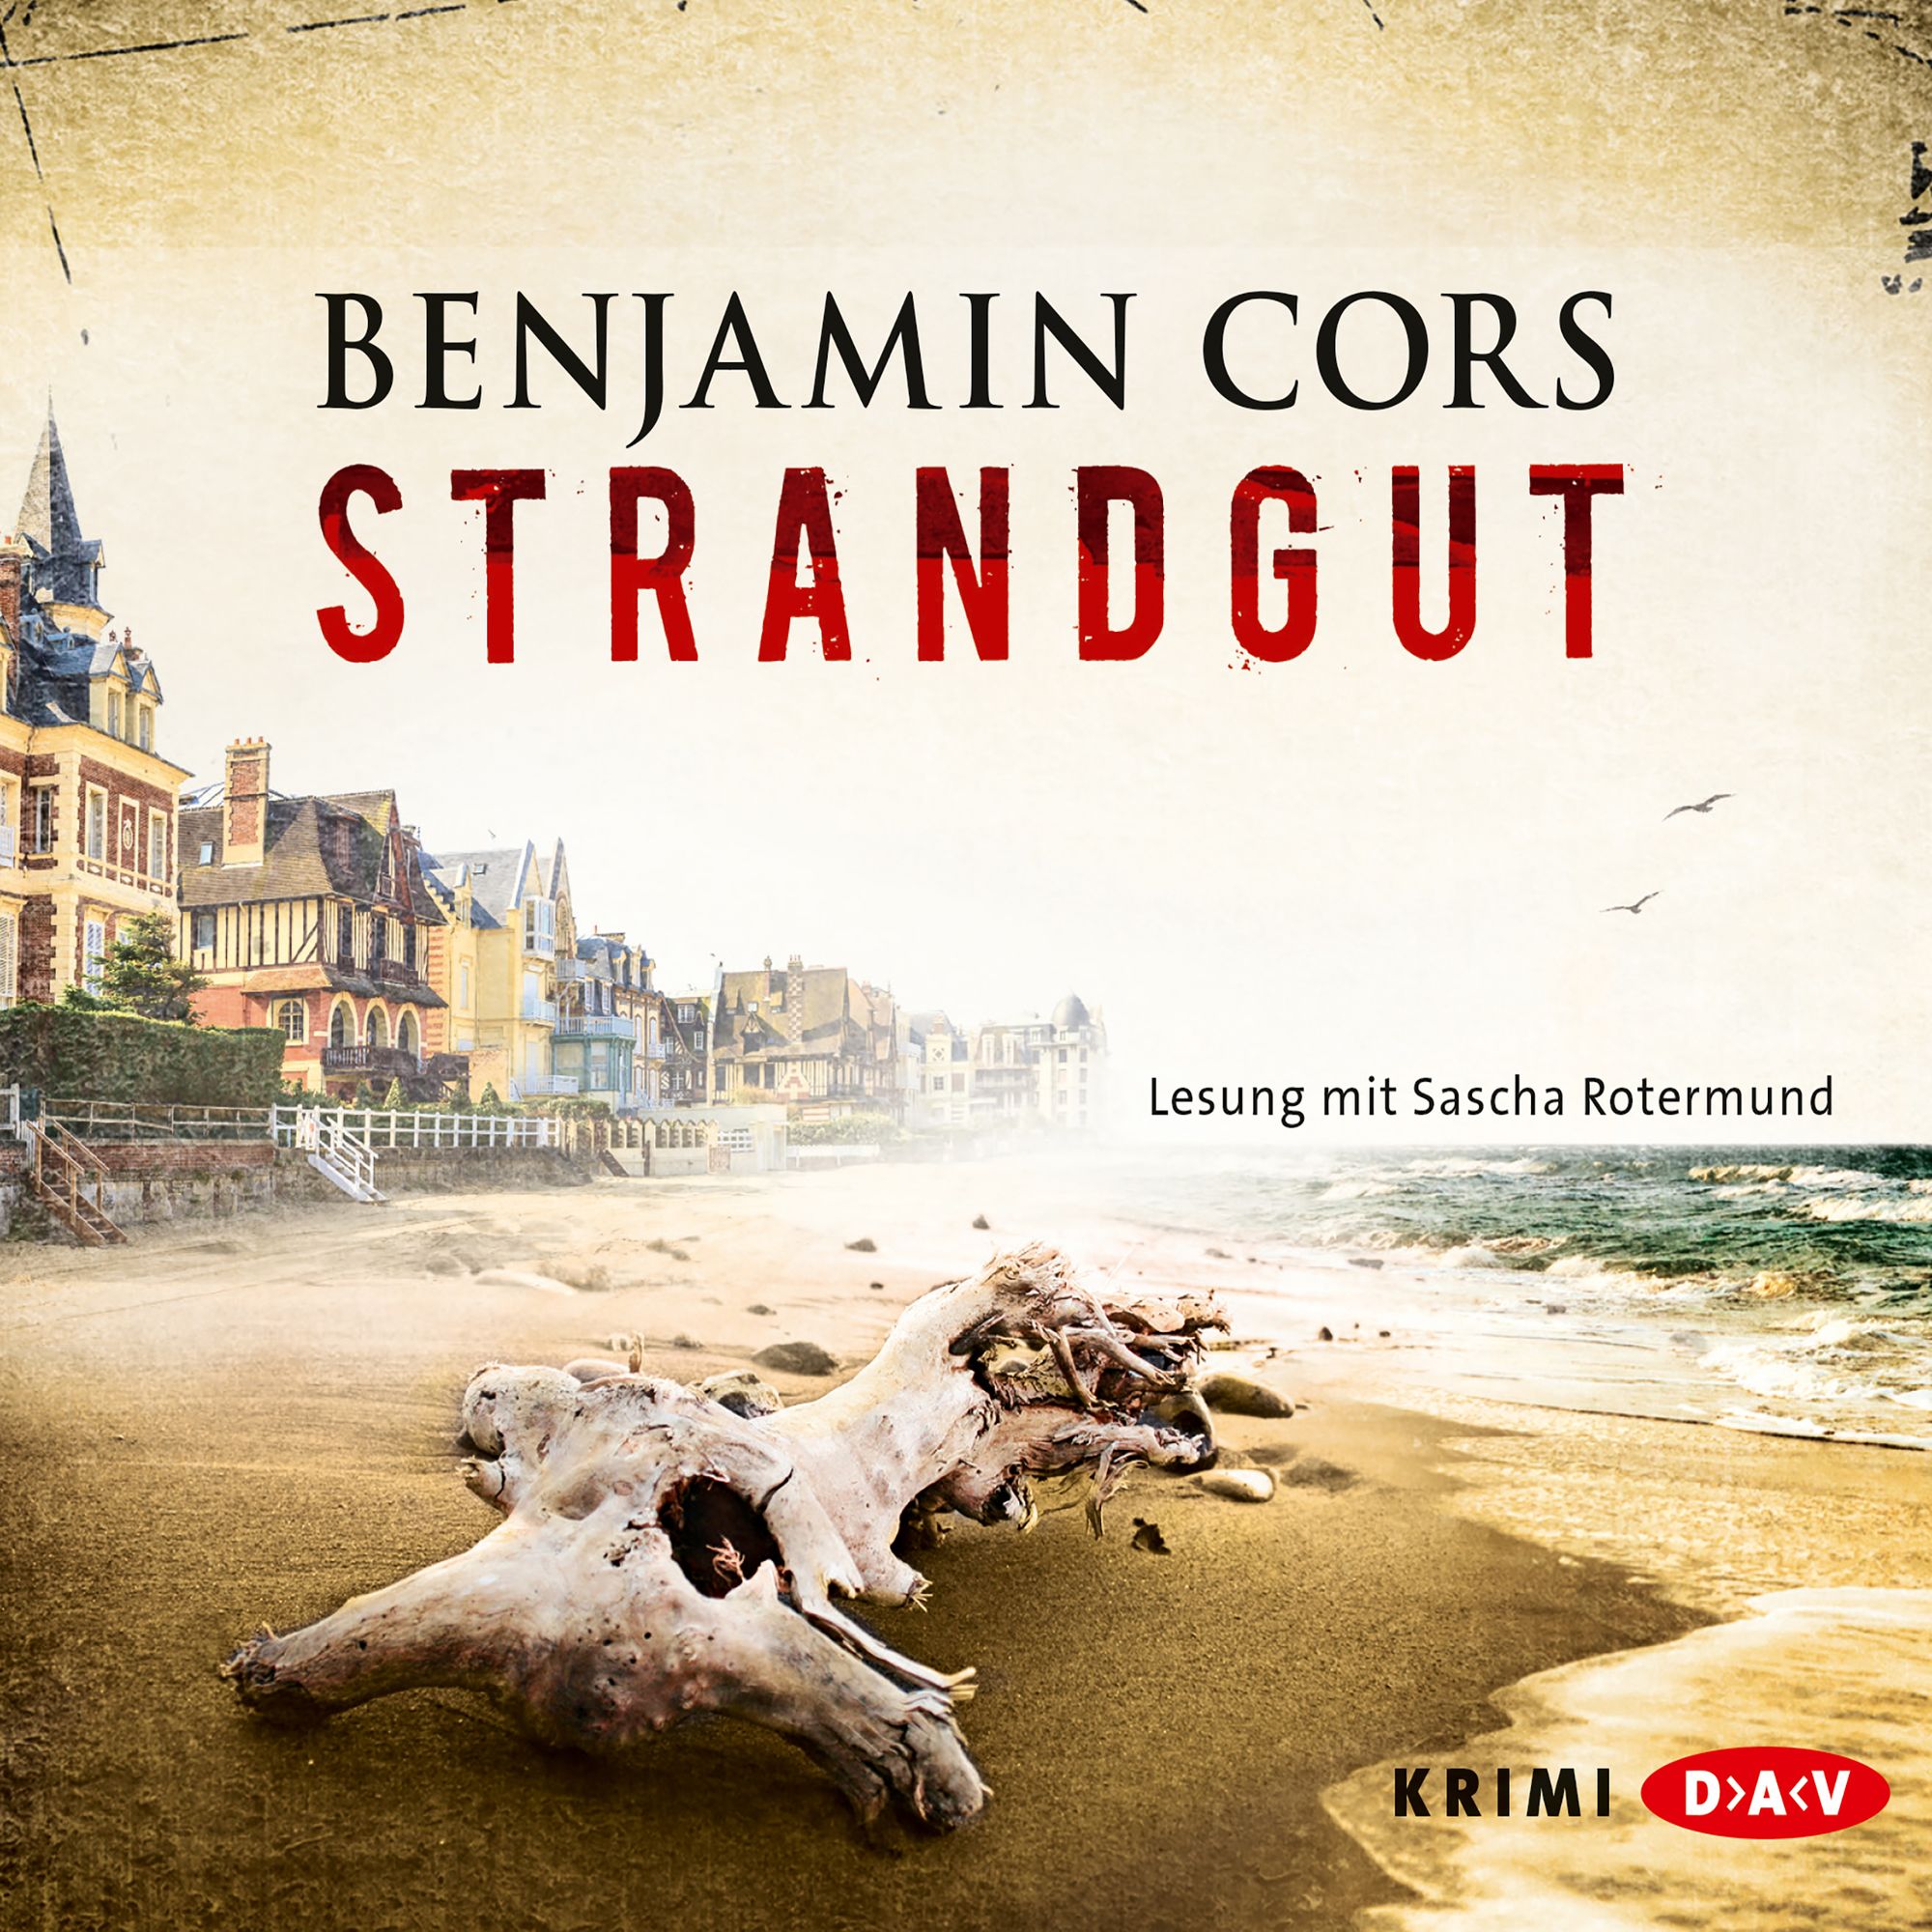 Strandgut' von 'Benjamin Cors' - Hörbuch-Download